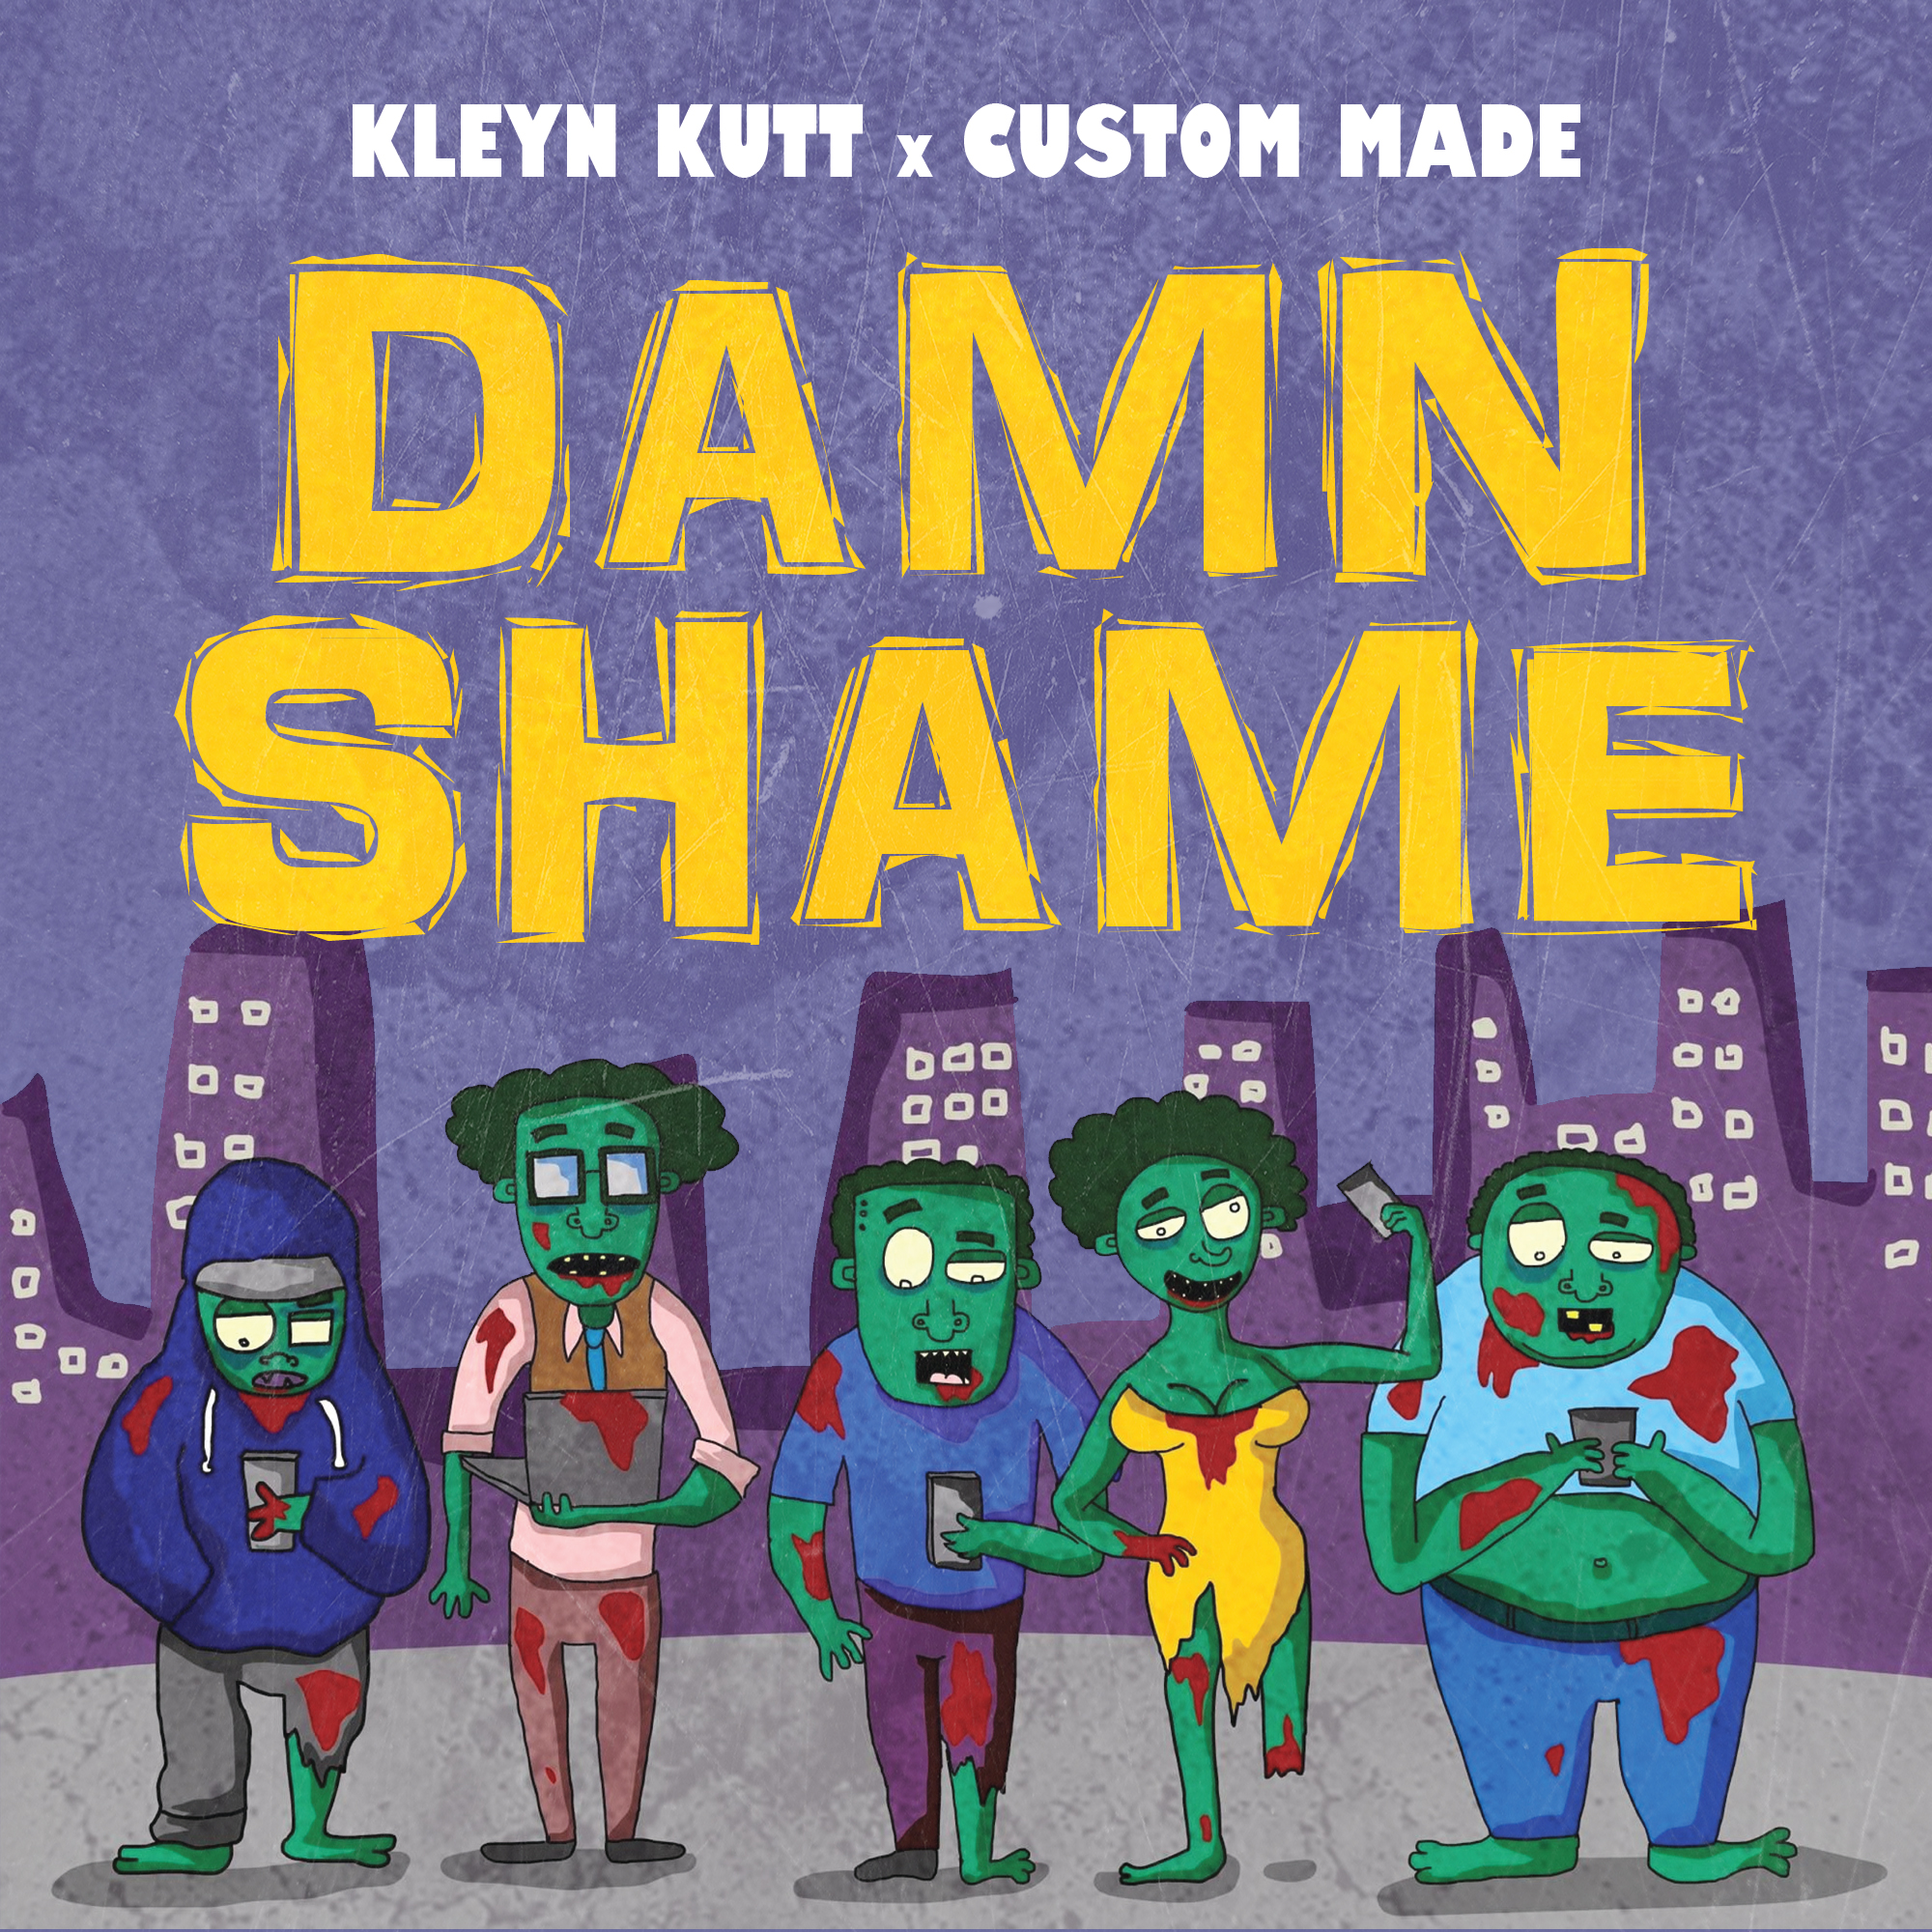 Kleyn Kutt Collabs With Custom Made For “Damn Shame”